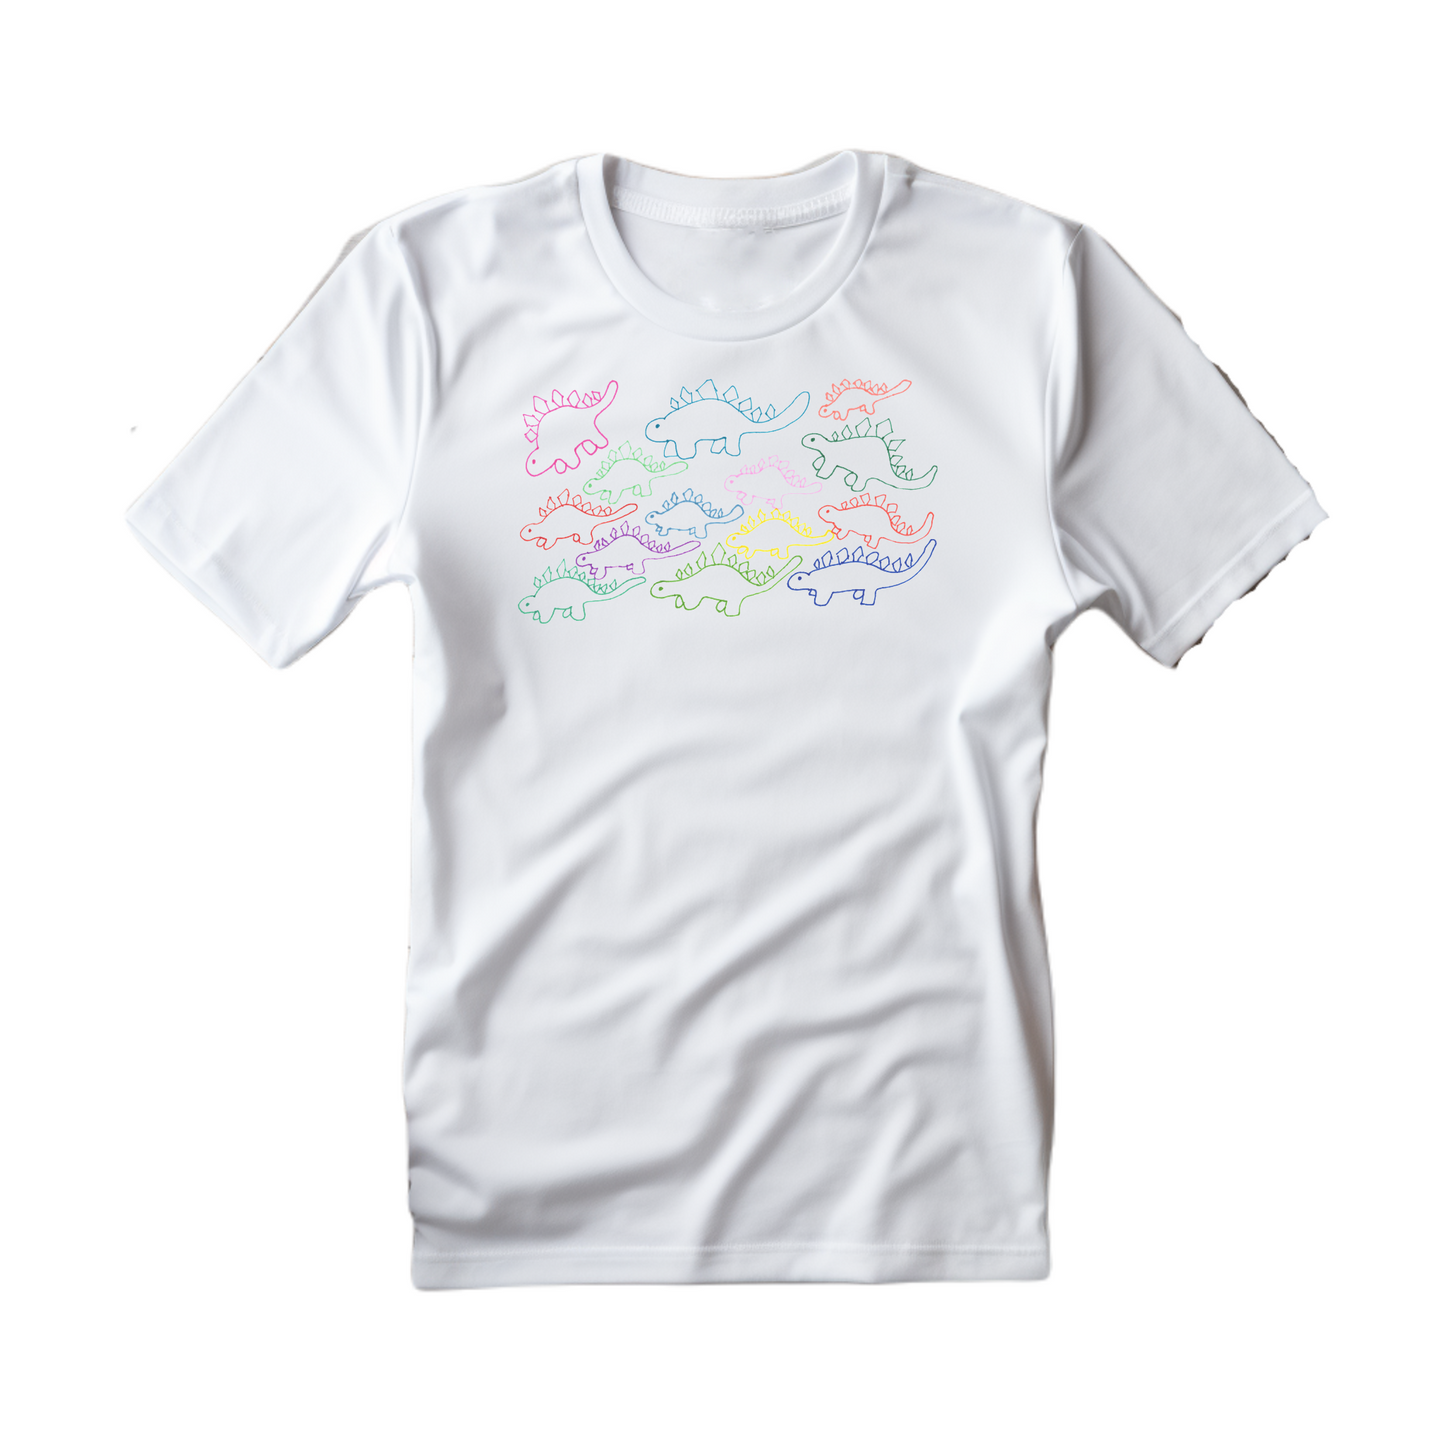 Colorblast Stegosauruses: Unisex T-Shirt